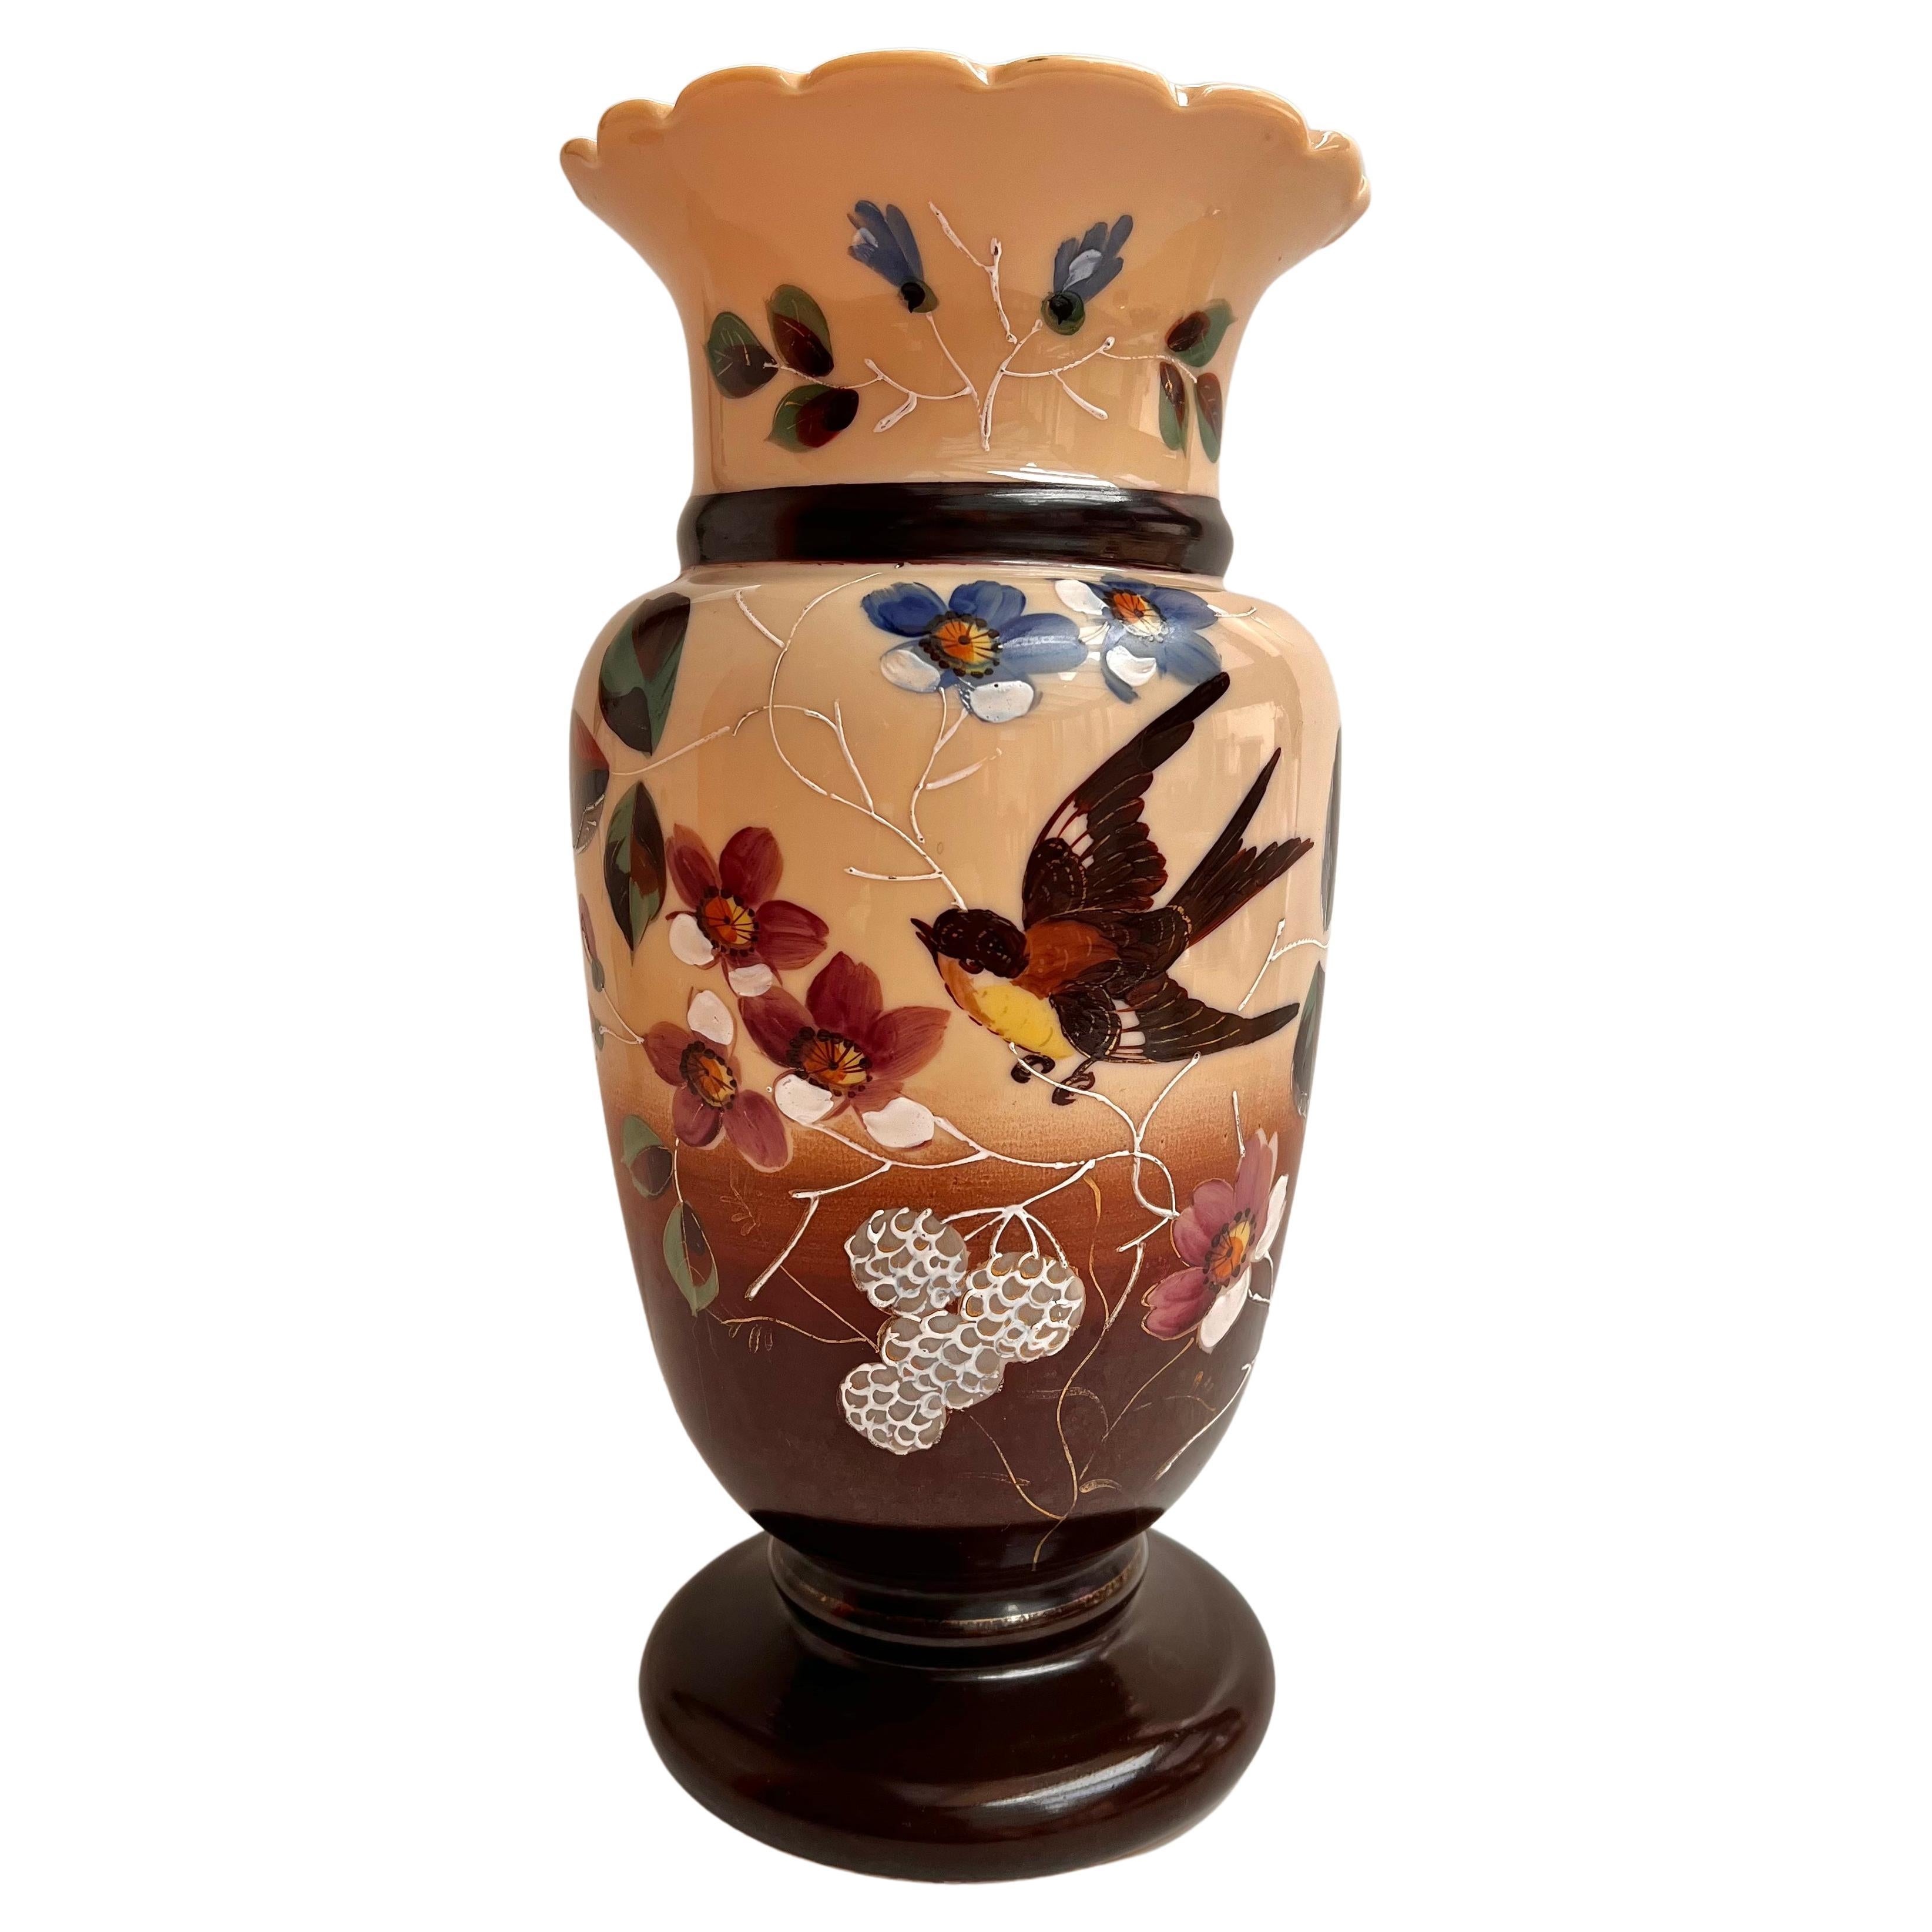 Grand vase ancien, France, début du 20e siècle Vase ancien en verre opalin